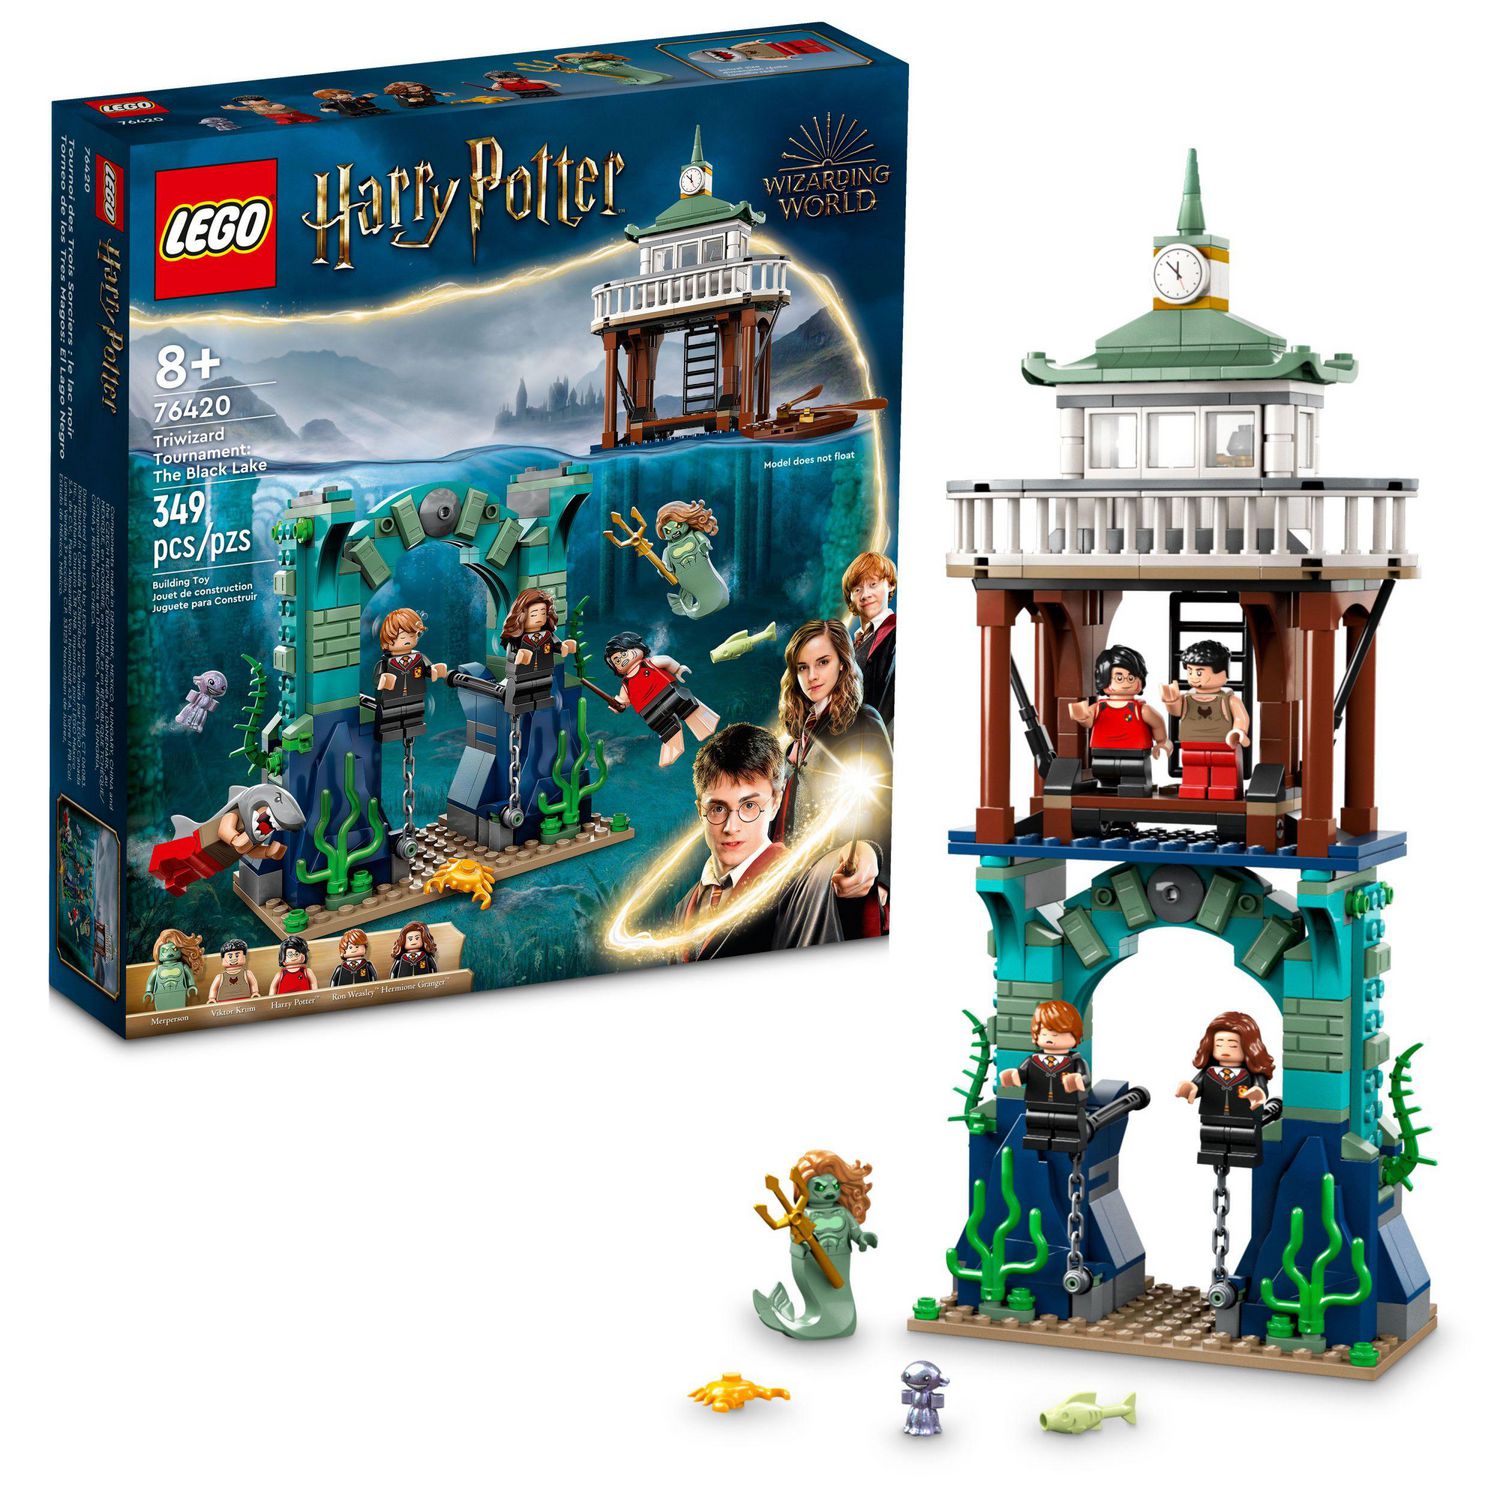 Livre lego Harry Potter neuf - Lego